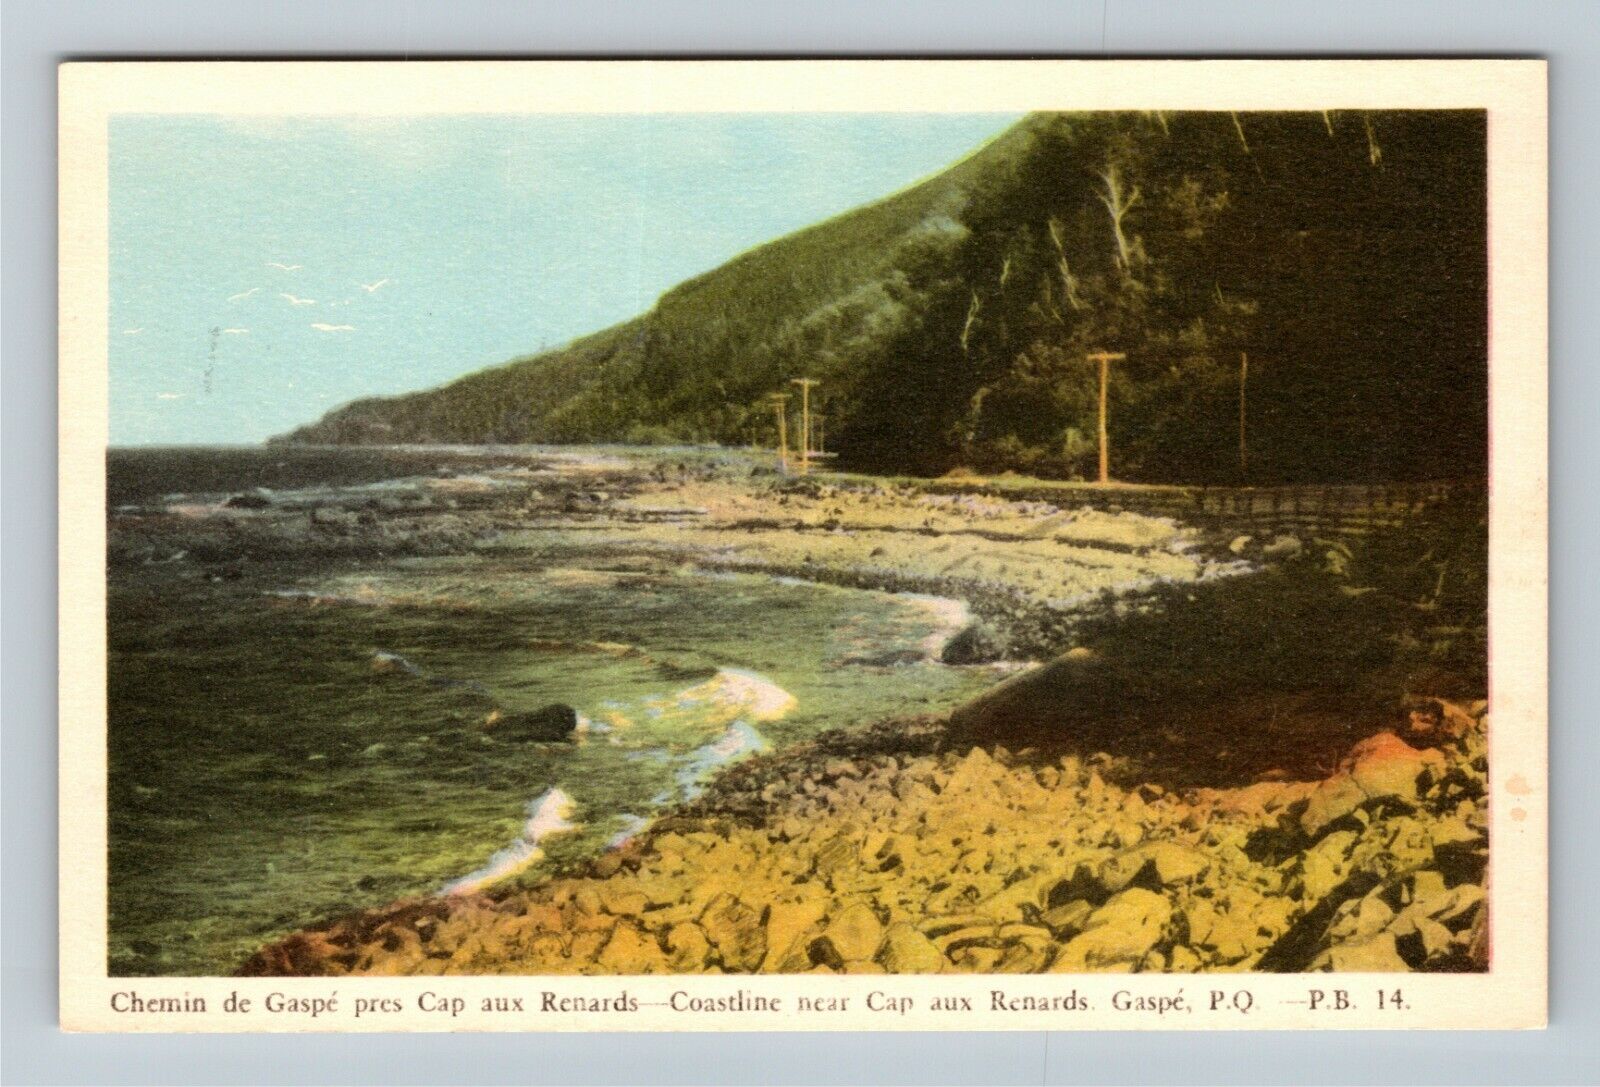 Quebec Canada, Rocky Coastline near Cap aux Renards Gaspe Vintage Postcard